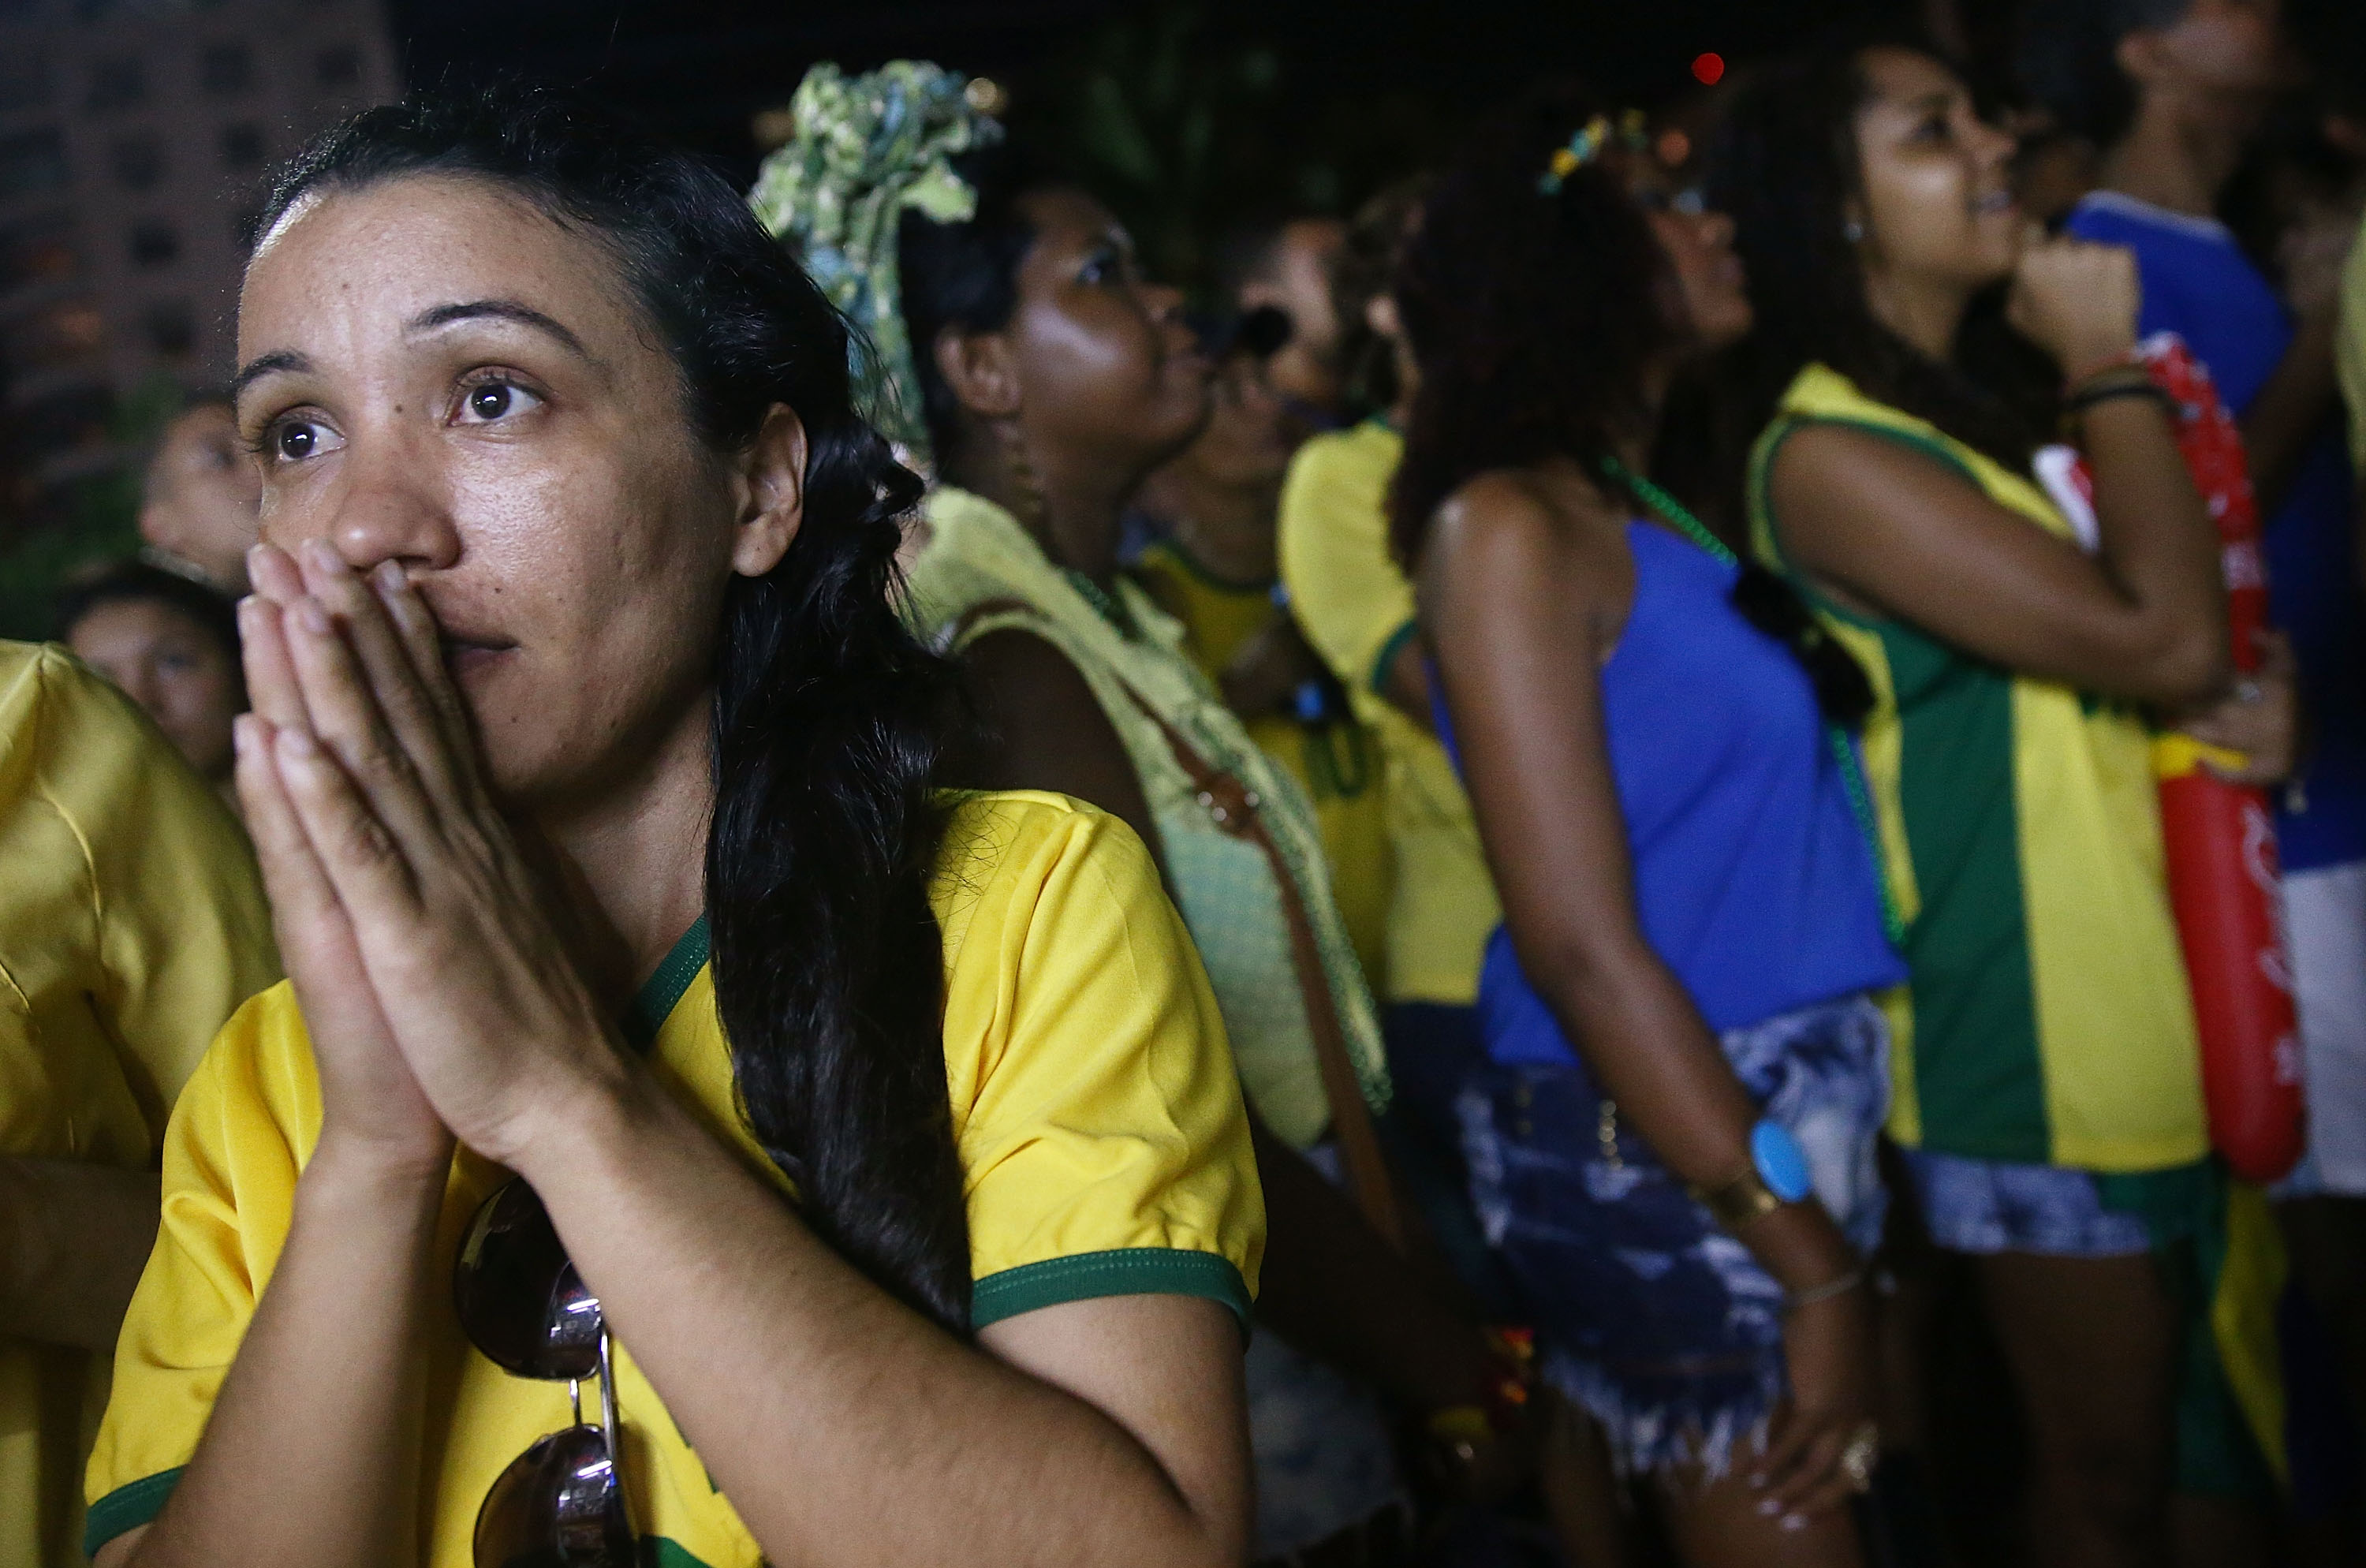 Vor dem Halbfinale Deutschland gegen Brasilien: Brasilianer singen mit voller Freude für Deutschland (Video)